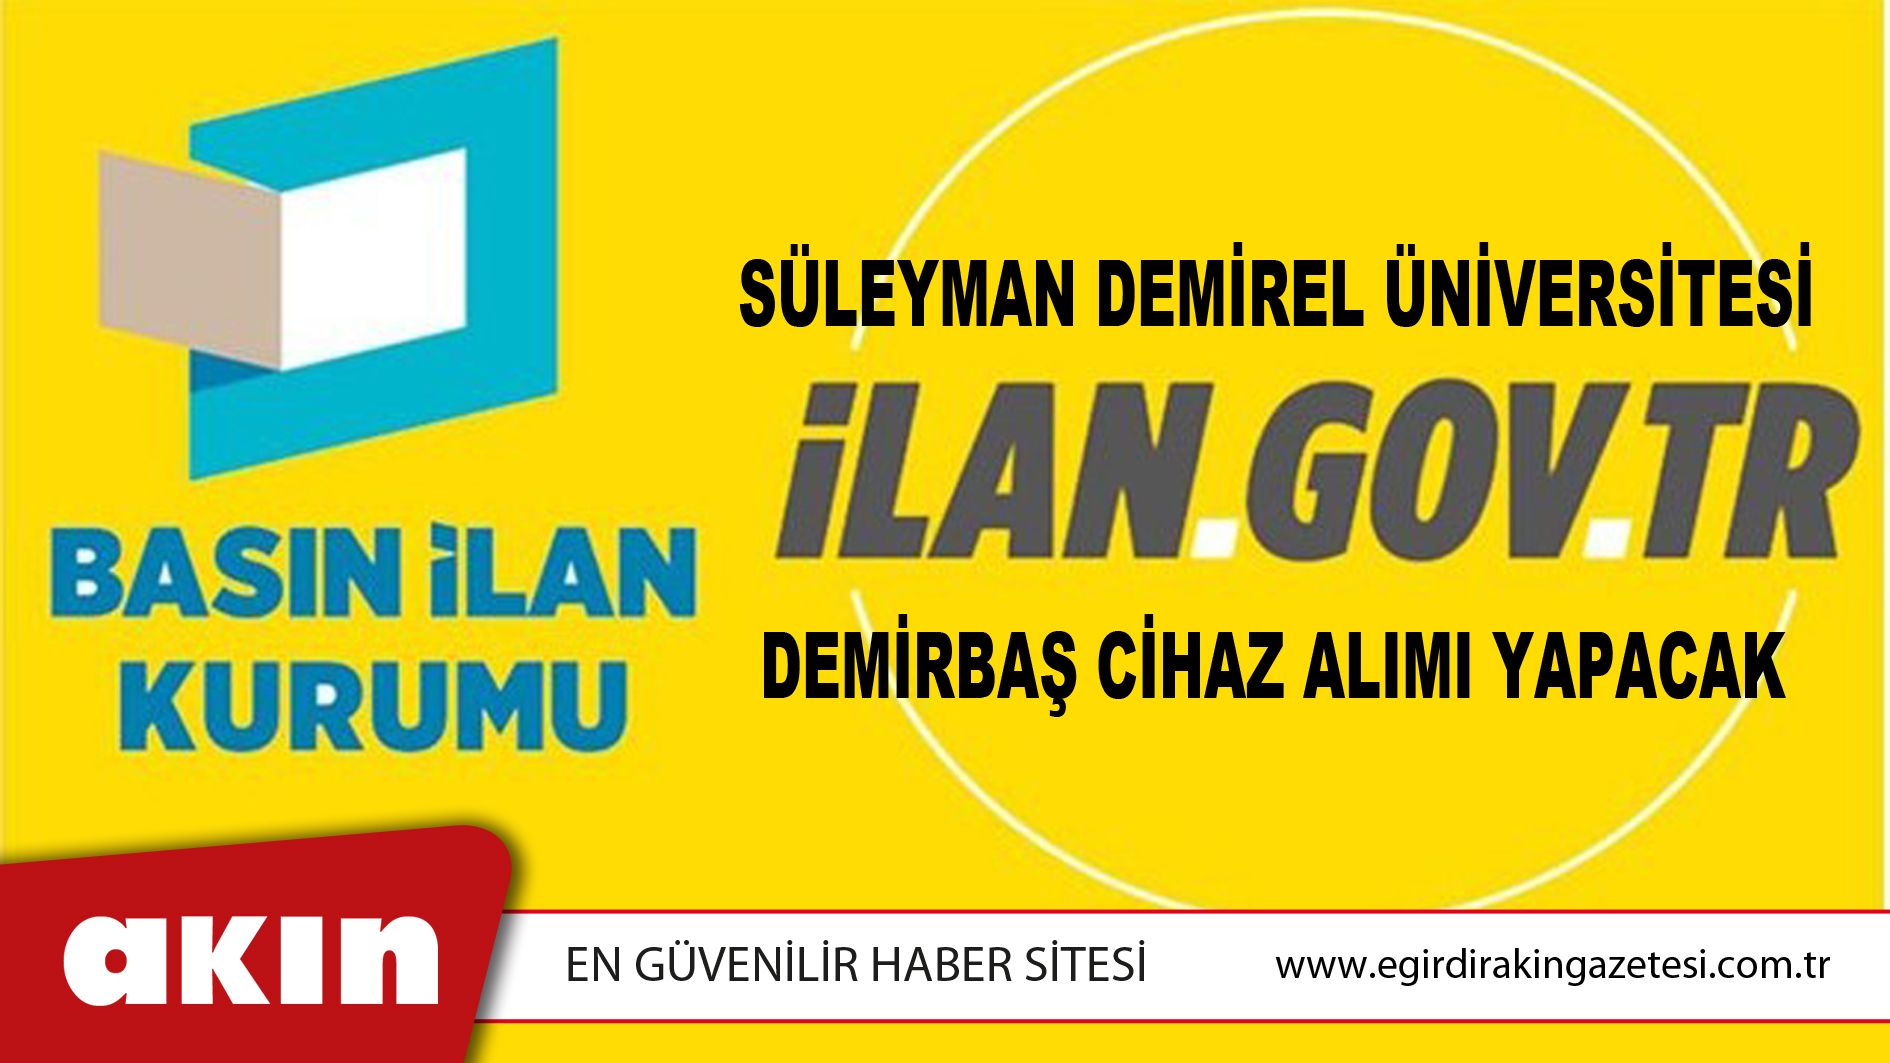 eğirdir haber,akın gazetesi,egirdir haberler,son dakika,Süleyman Demirel Üniversitesi Demirbaş Cihaz Alımı Yapacak